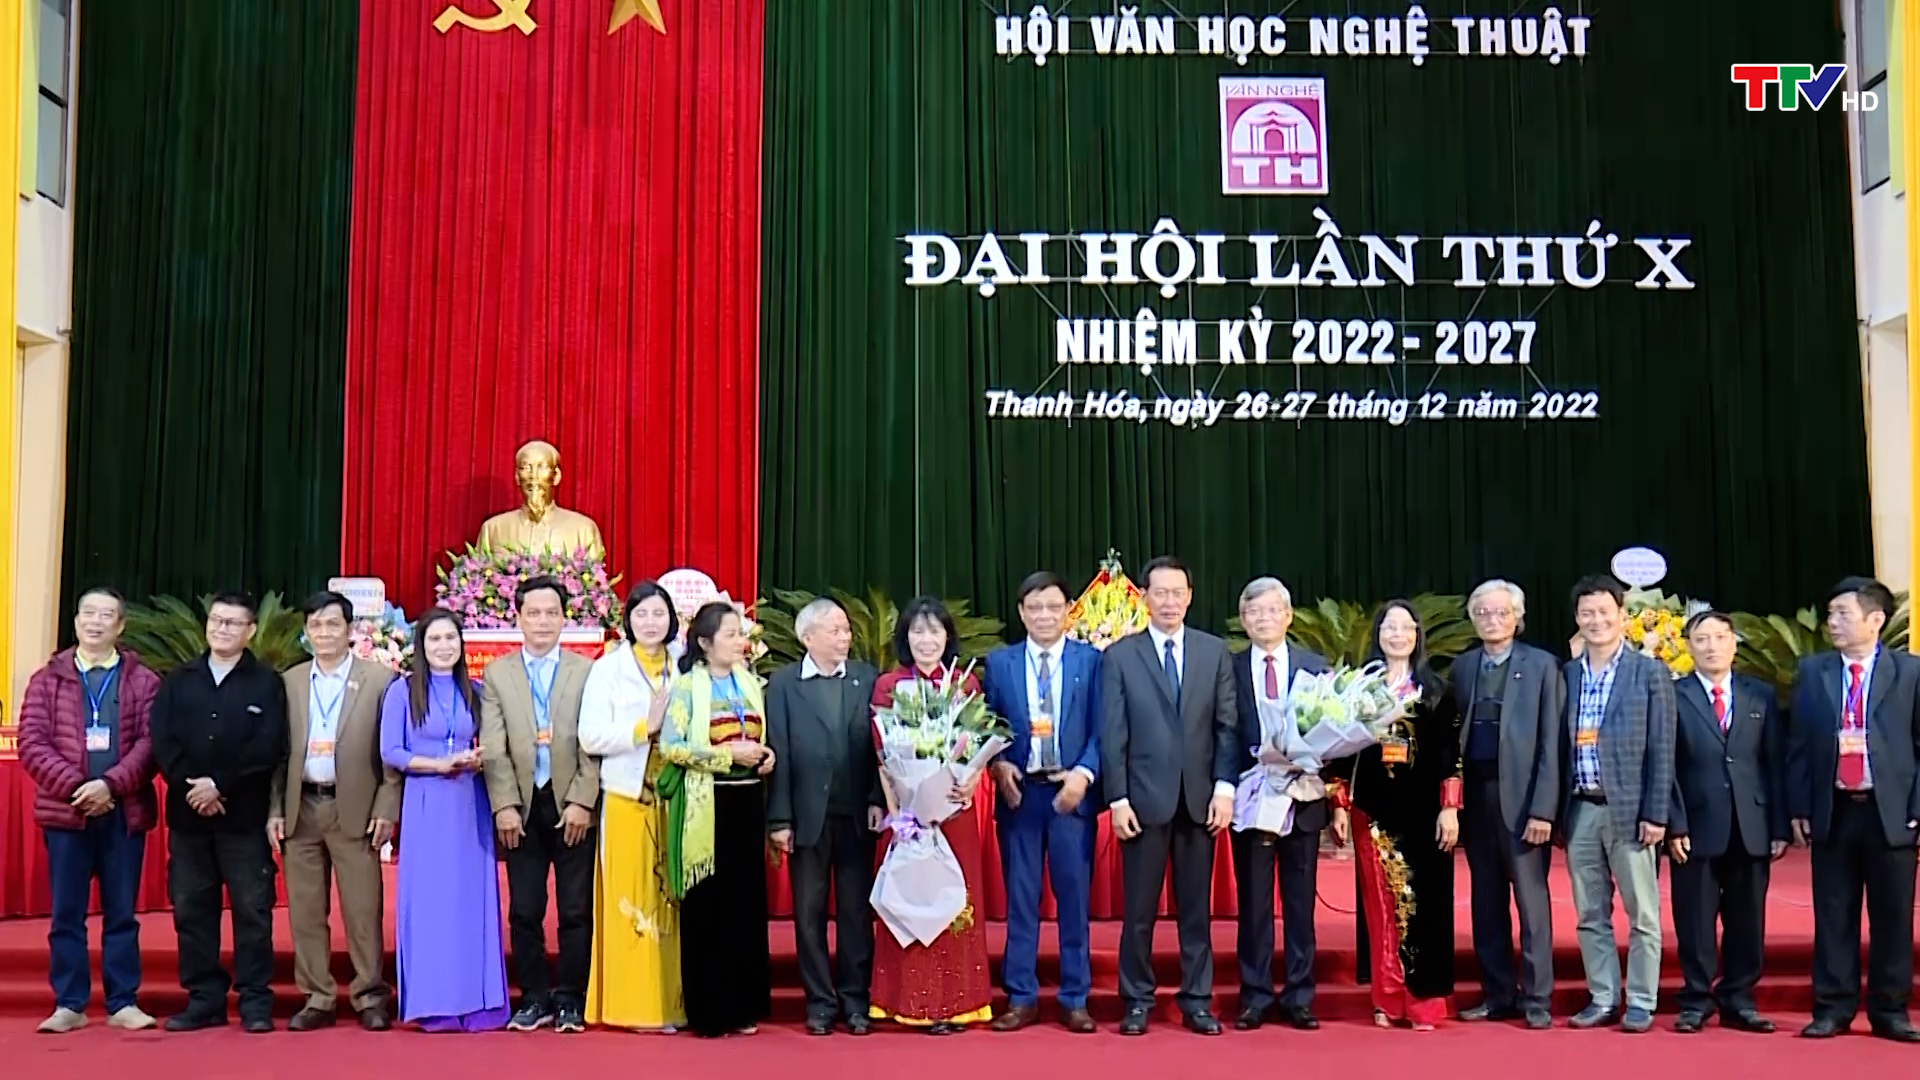 Đại hội Hội Văn học nghệ thuật Thanh Hoá lần thứ X, nhiệm kỳ 2022 - 2027 - Ảnh 6.